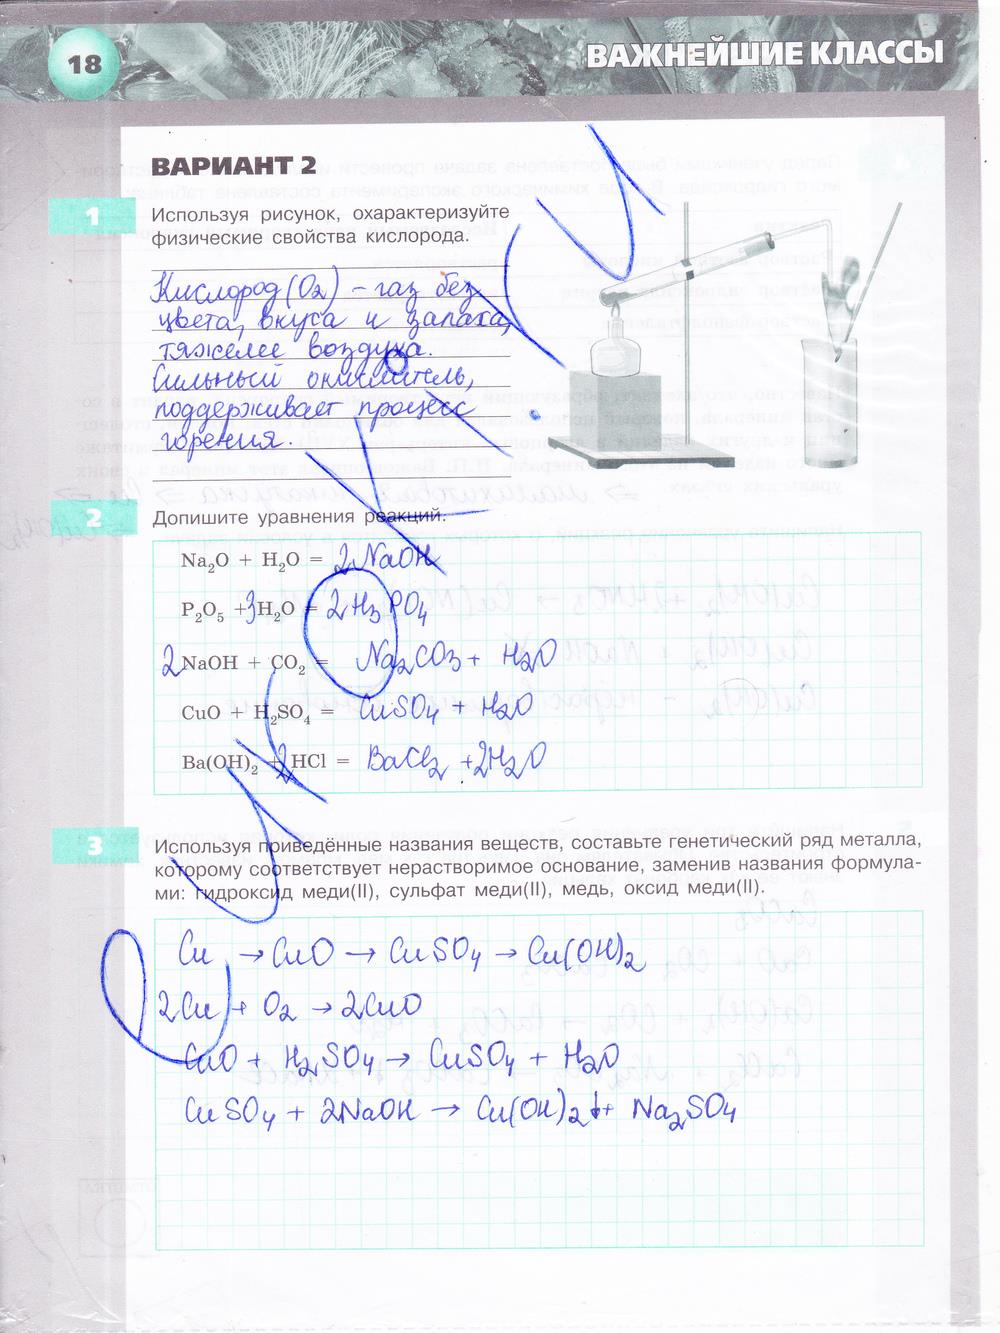 гдз 8 класс тетрадь-экзаменатор страница 18 химия Бобылева, Бирюлина